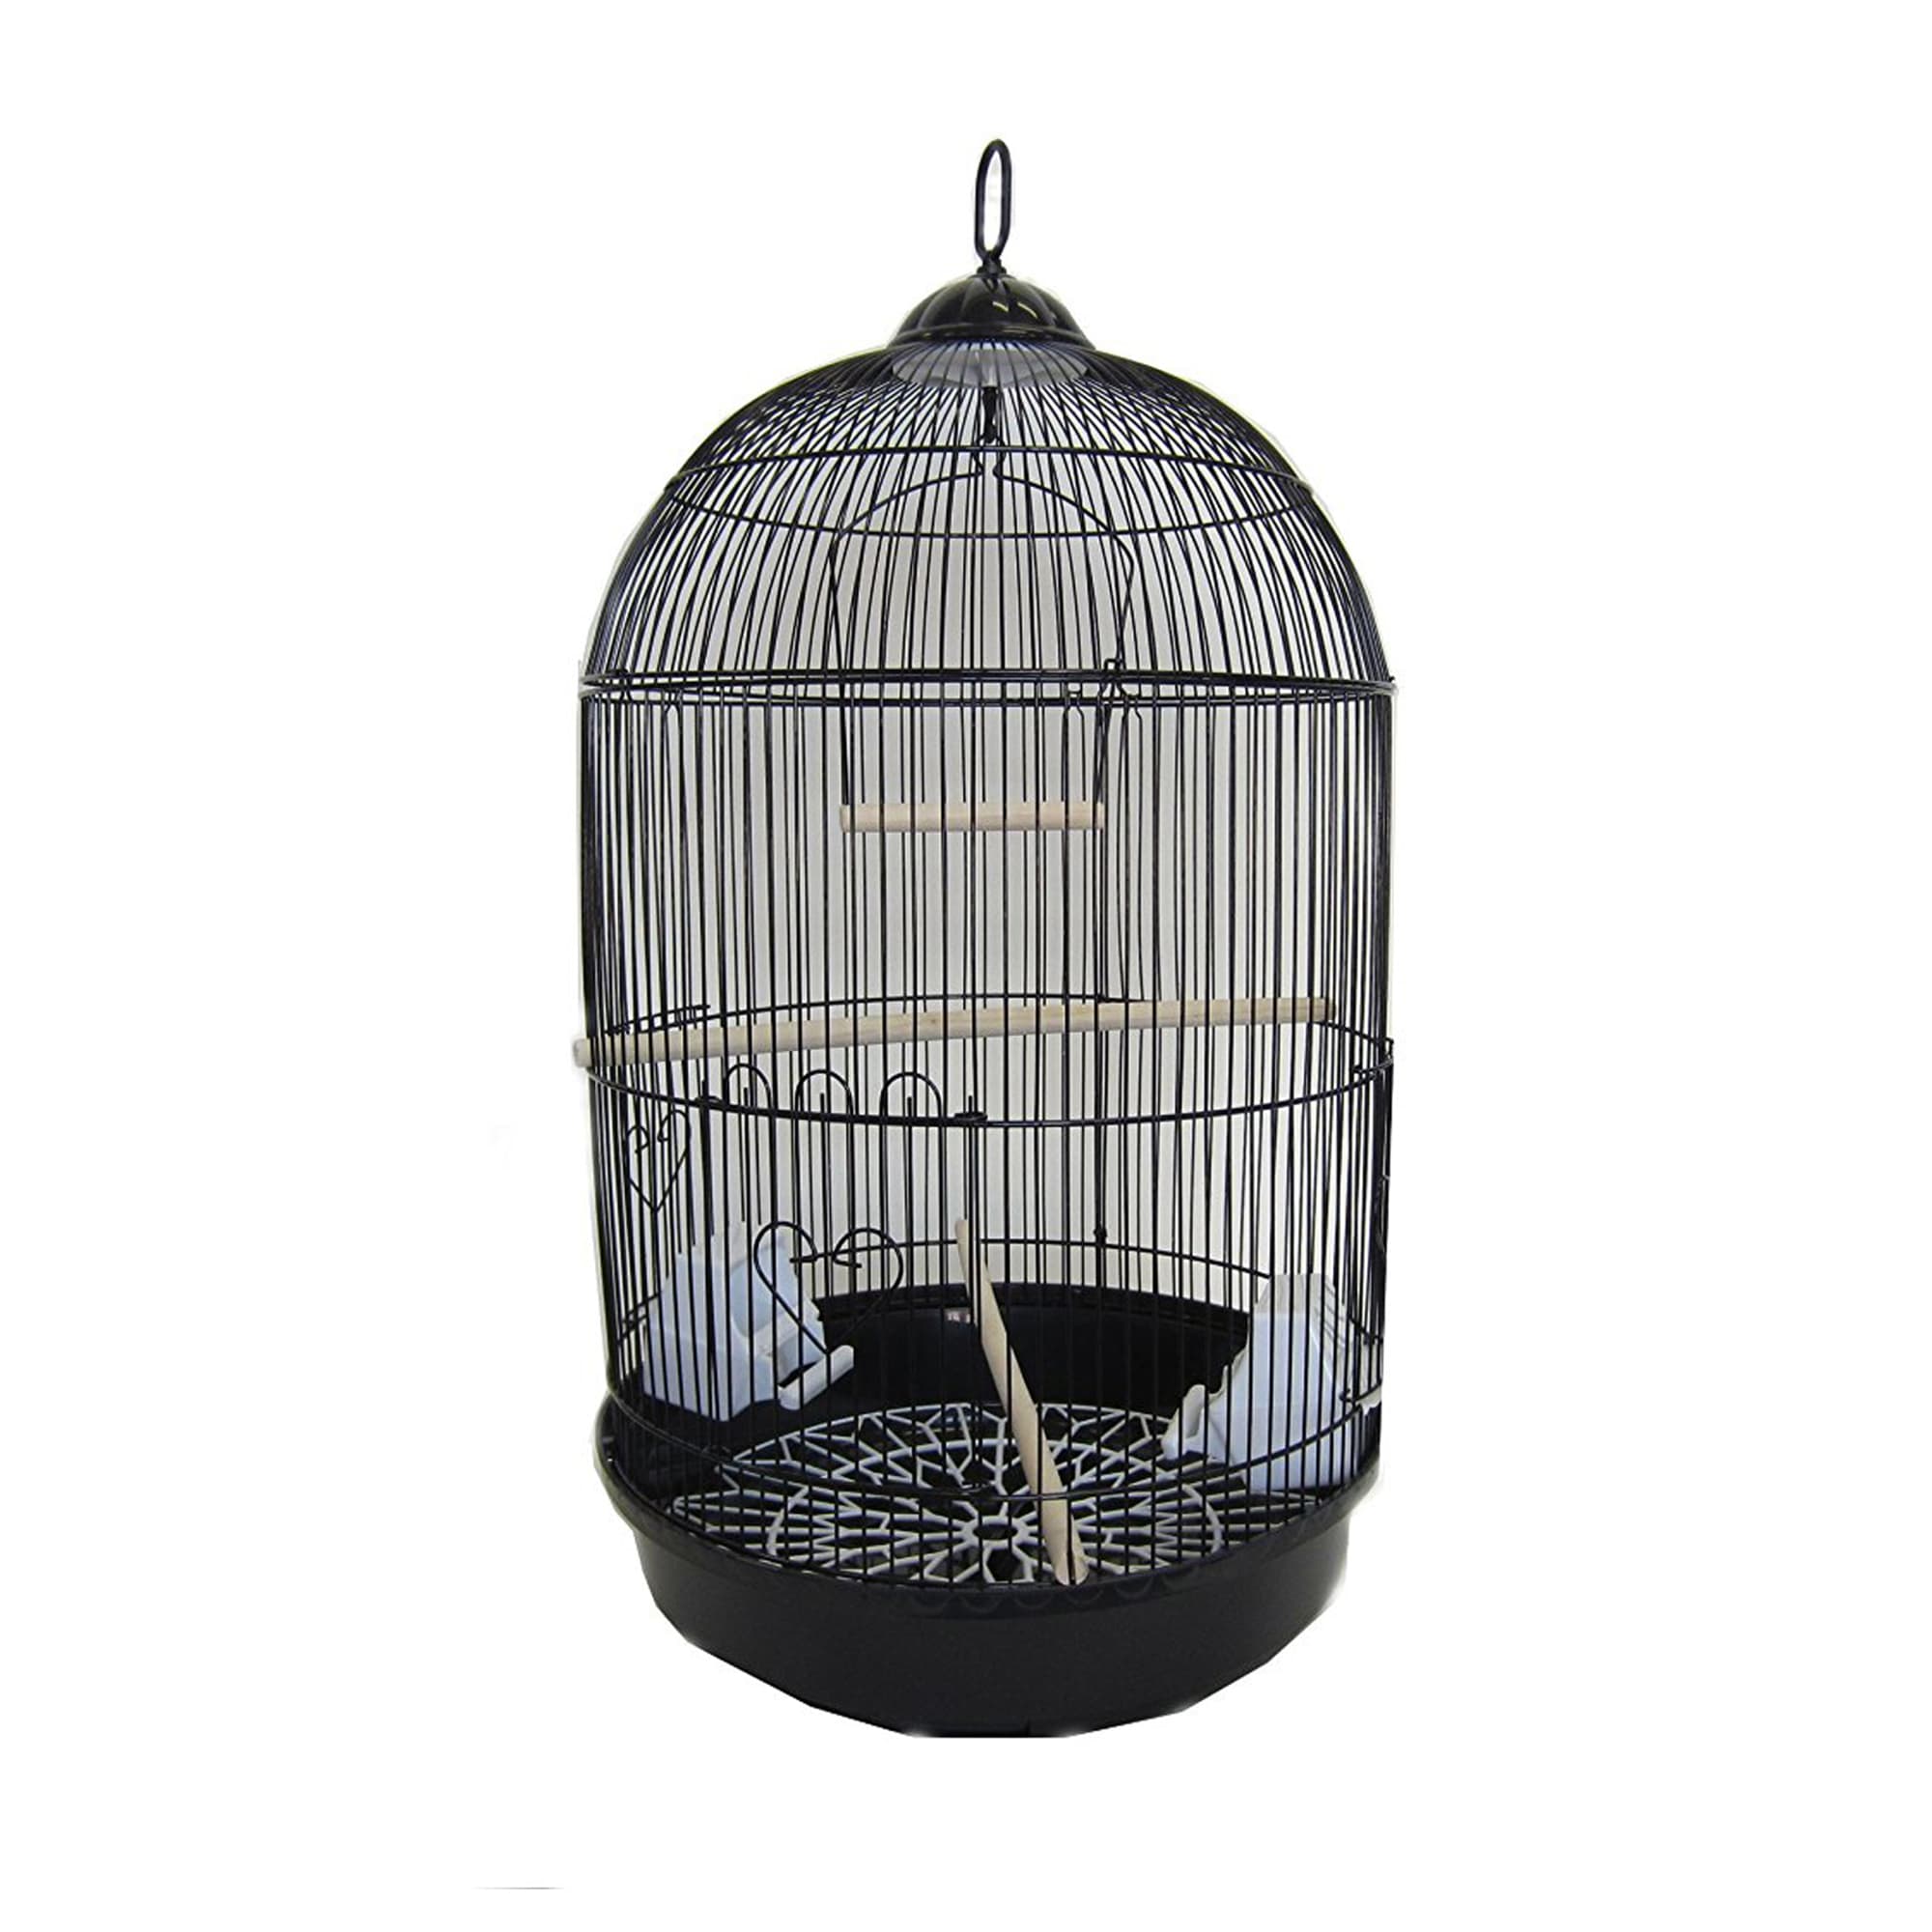 petco bird cages